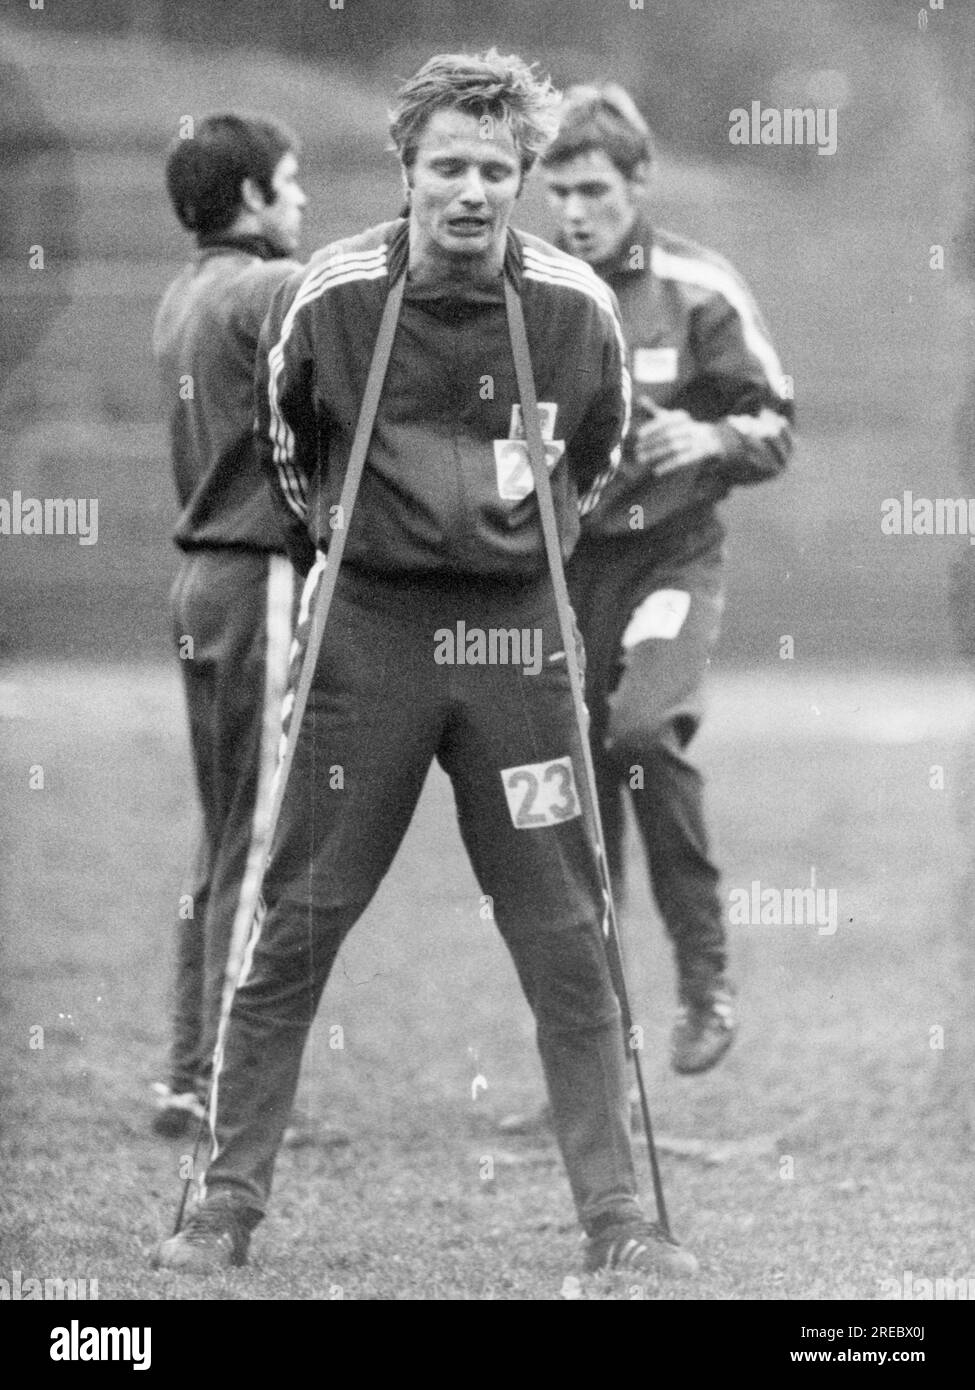 Varga, Zoltan, 1.1.1945 - 9,4.2010, footballeur hongrois, attaquant intermédiaire de Hertha BSC, entraînement, INFORMATIONS-AUTORISATION-DROITS-SUPPLÉMENTAIRES-NON-DISPONIBLE Banque D'Images